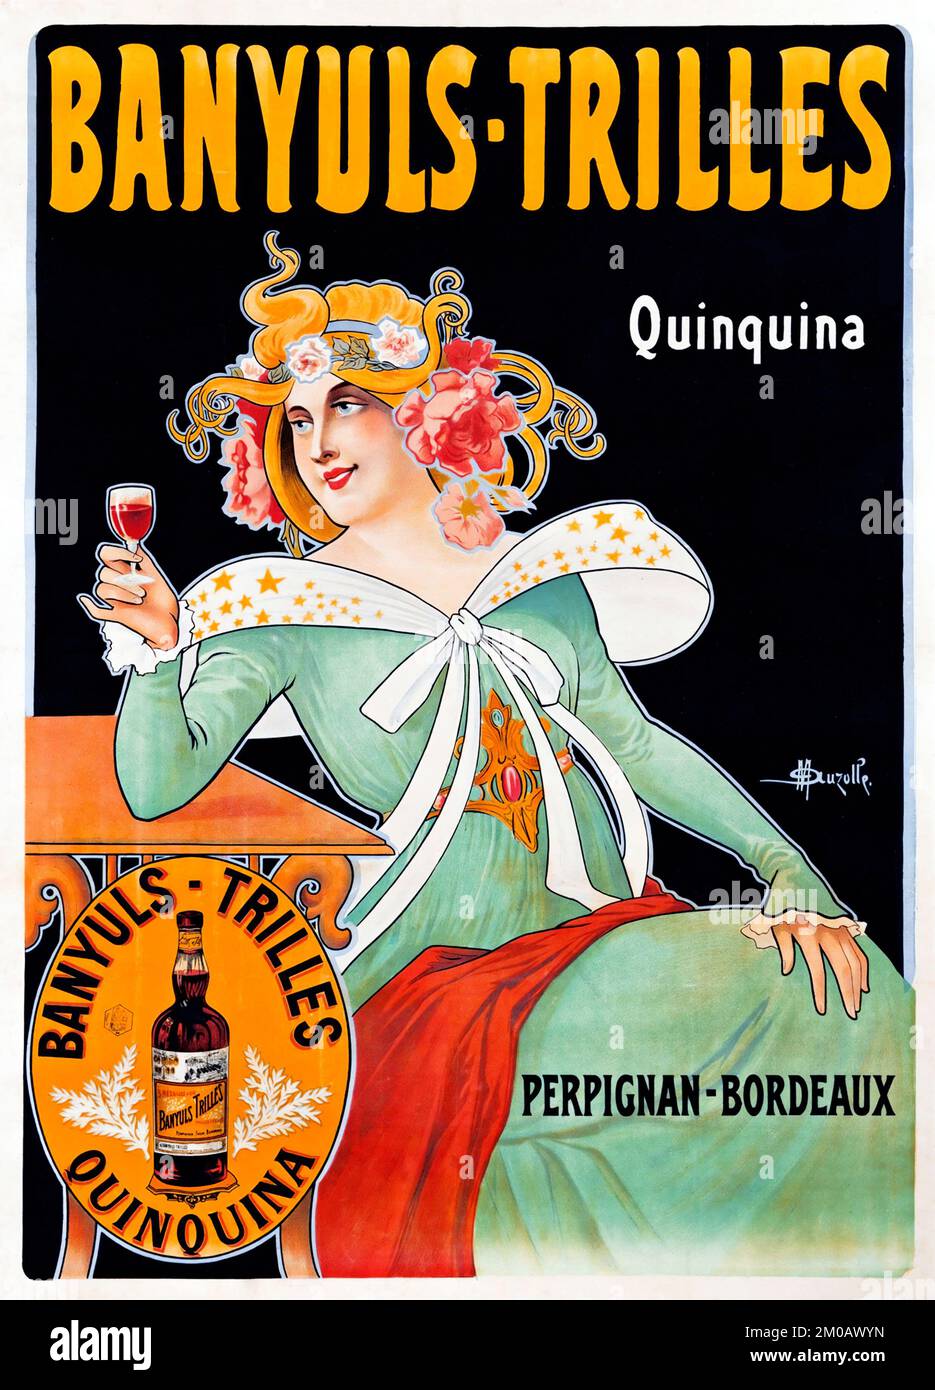 Banyuls-Trilles Quinquina - Perpignan-Bordaux, affiche publicitaire sur l'alcool d'époque - œuvres de Marcellin Auzolle 1905 Banque D'Images